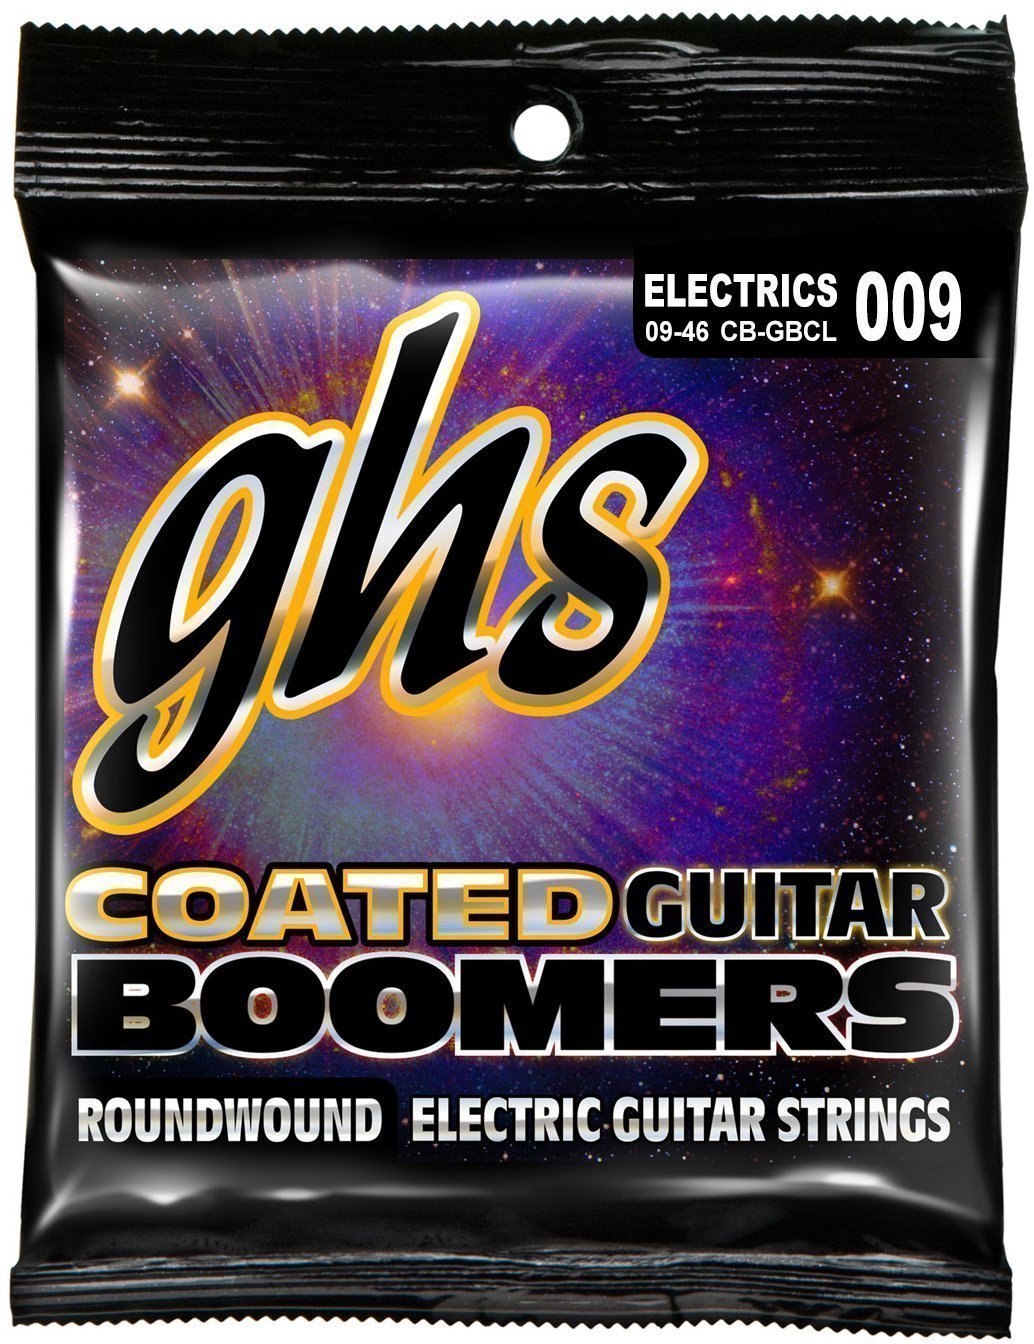 Struny pro elektrickou kytaru GHS Coated Boomers 9-46